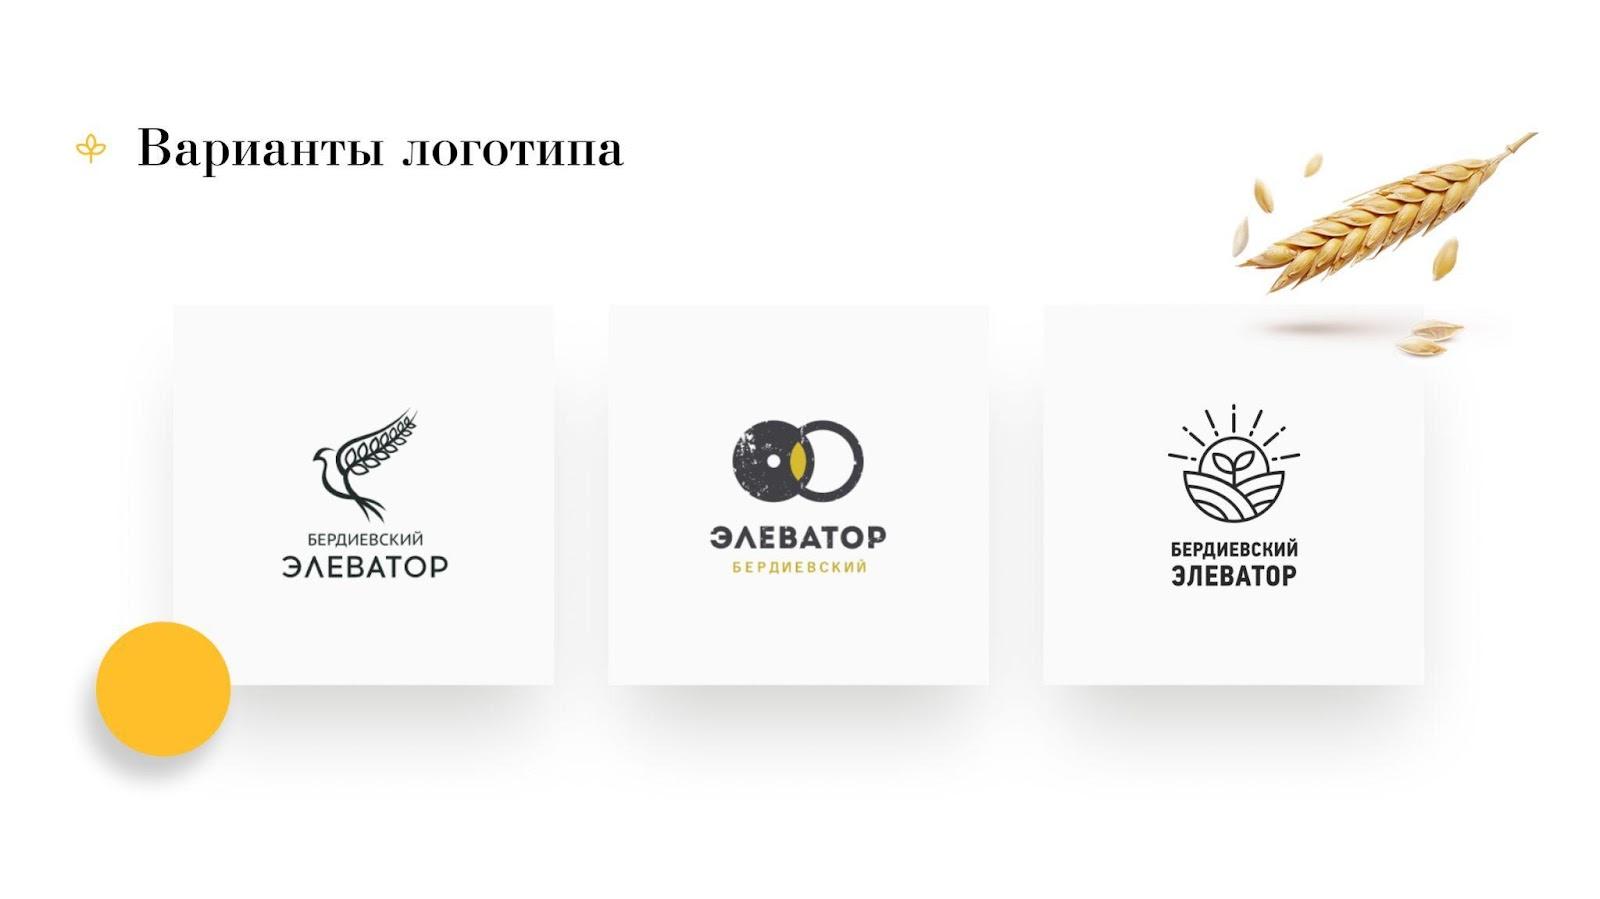 Как создавался лучший корпоративный B2B-сайт России 2020 года